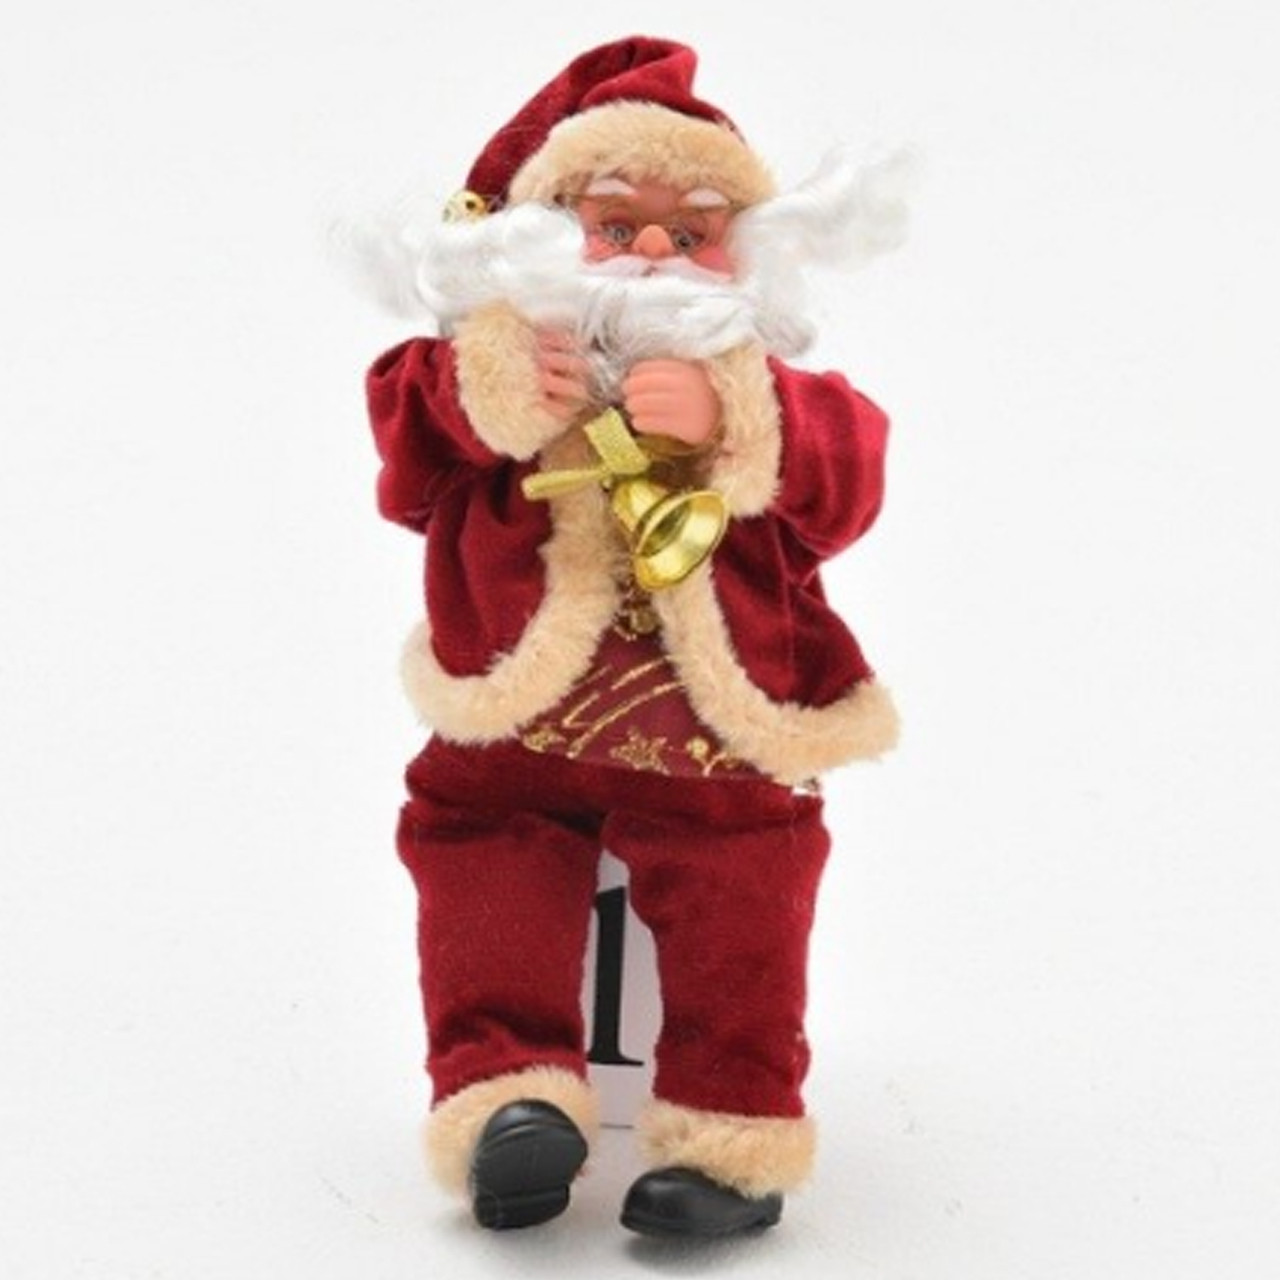 Фігурка-іграшка Санта Клаус (Дід Мороз) у бордовому костюмі 25 см Новорічний декор і прикраса для дому